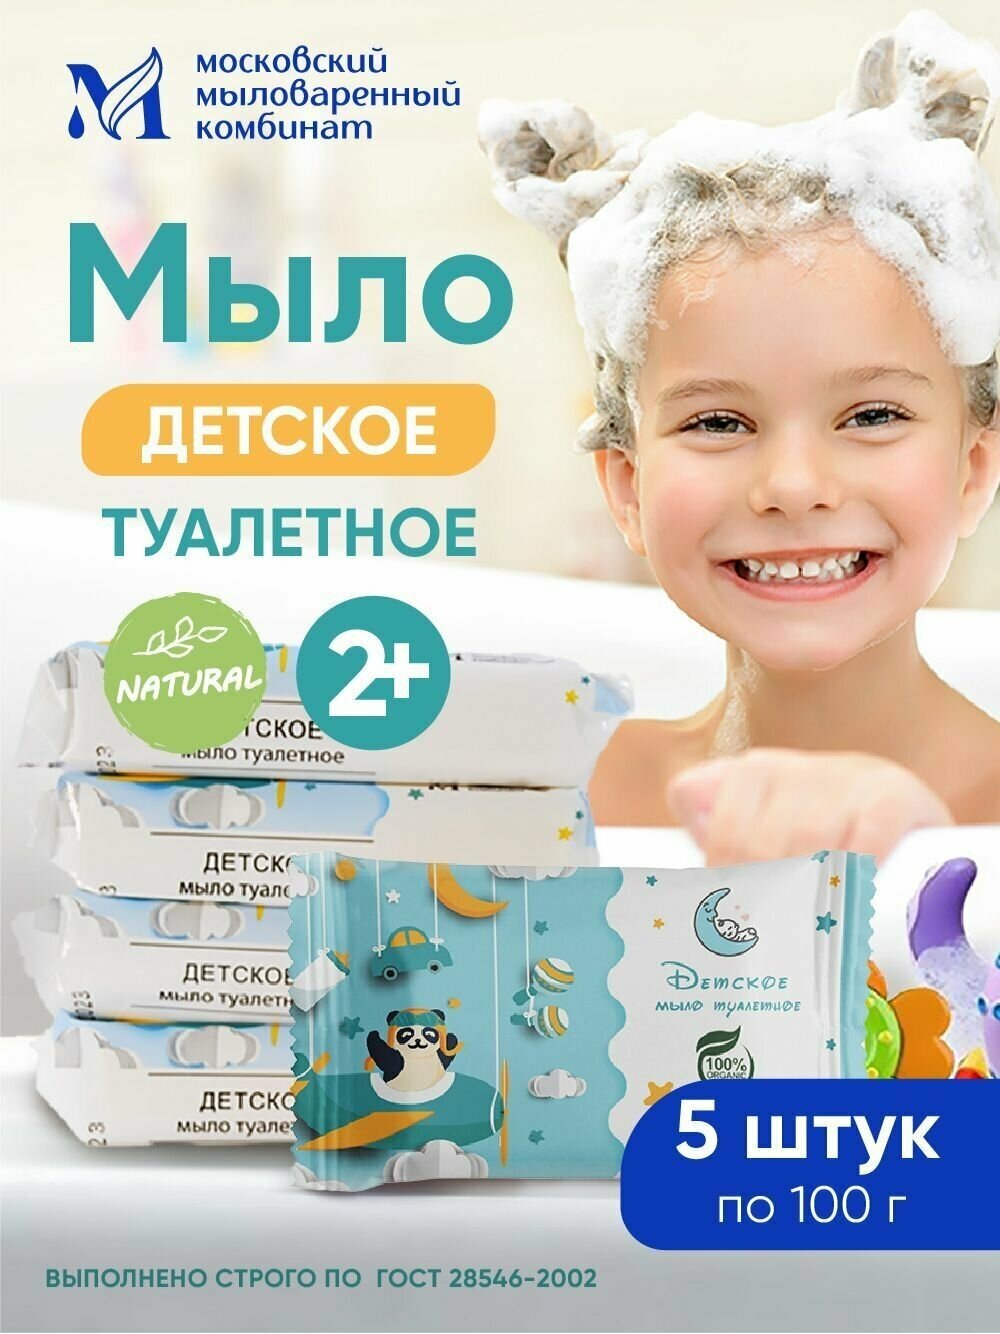 ММК Мыло туалетное "Детское" 100 гр. в цветной обертке 5 шт. в упаковке